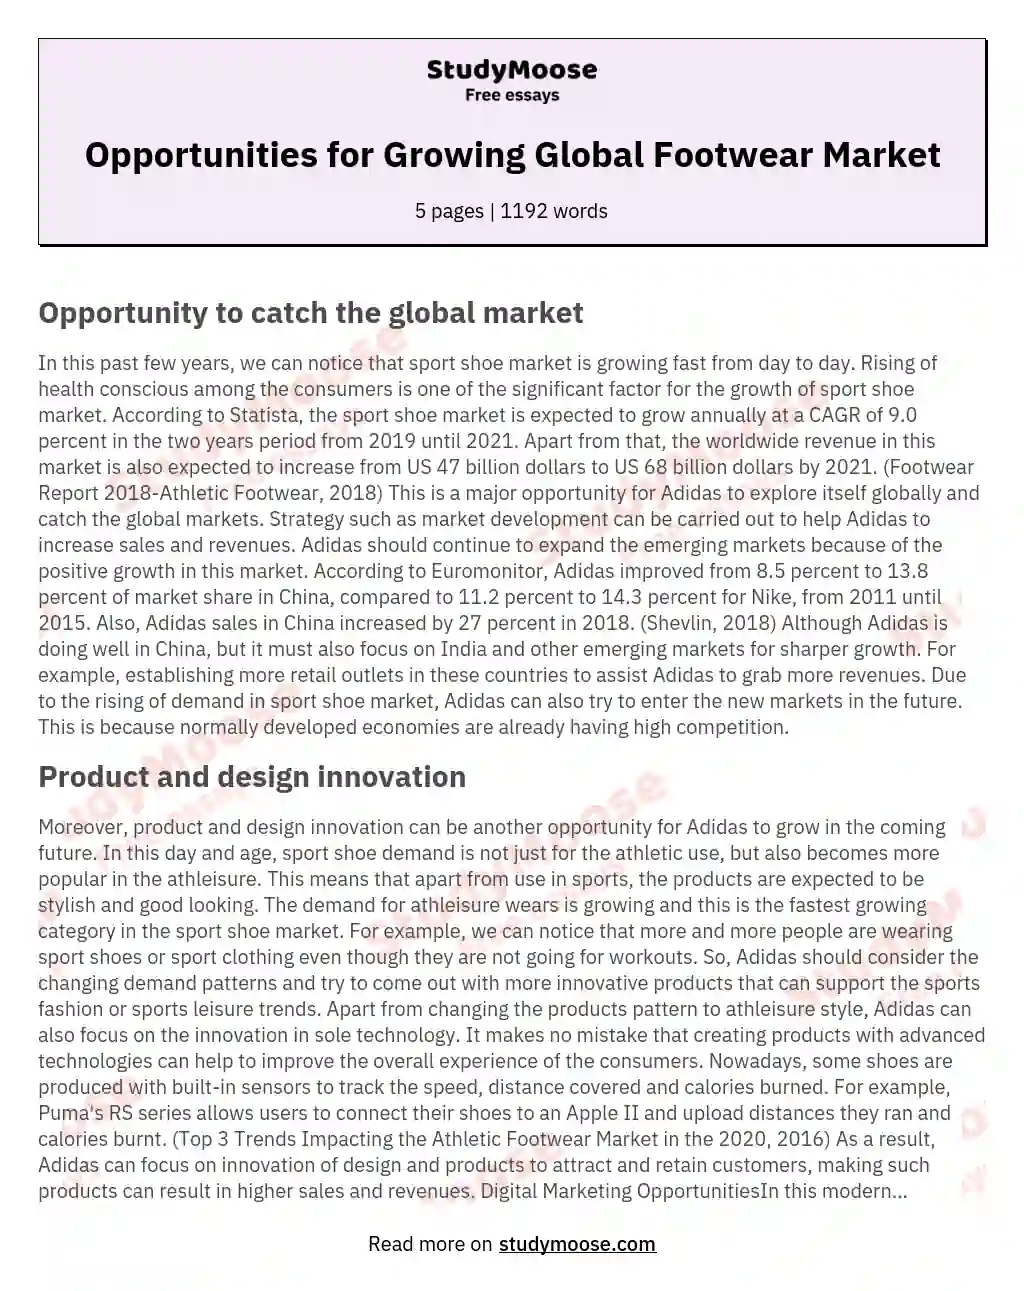 Opportunities for Growing Global Footwear Market essay